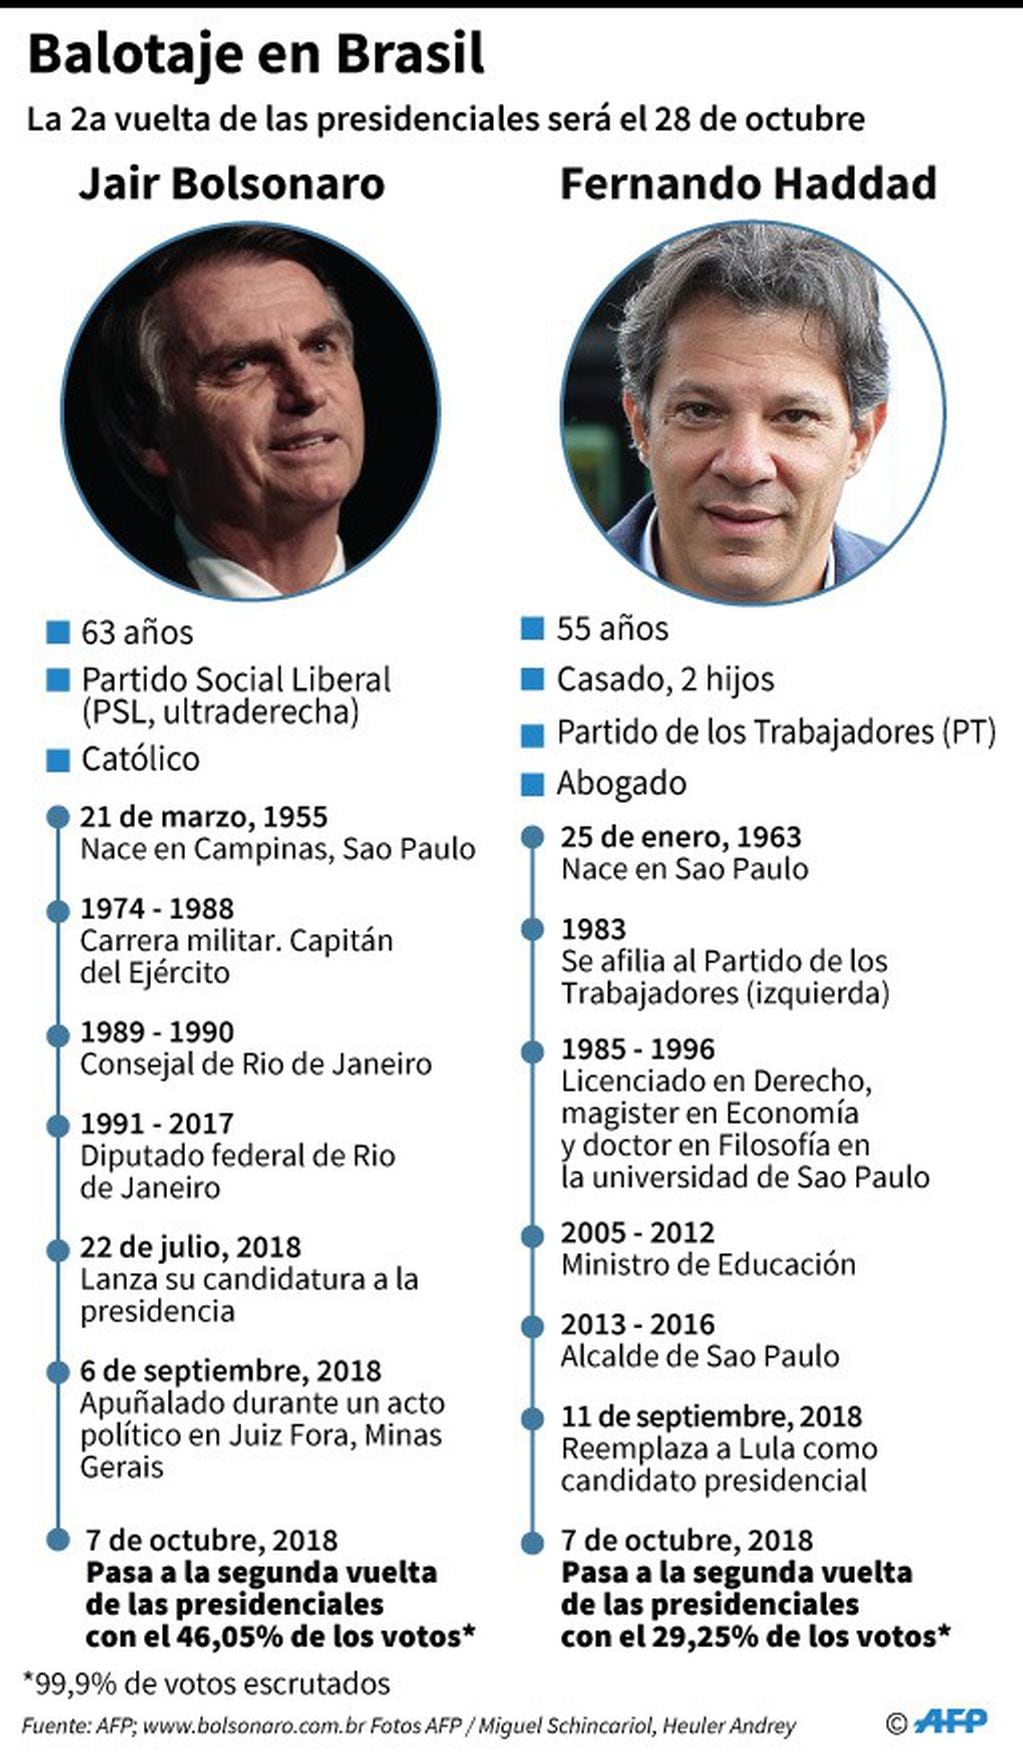 Ficha de los dos candidatos que disputarán el balotaje por la Presidencia de Brasil el 28 de octubre de 2018